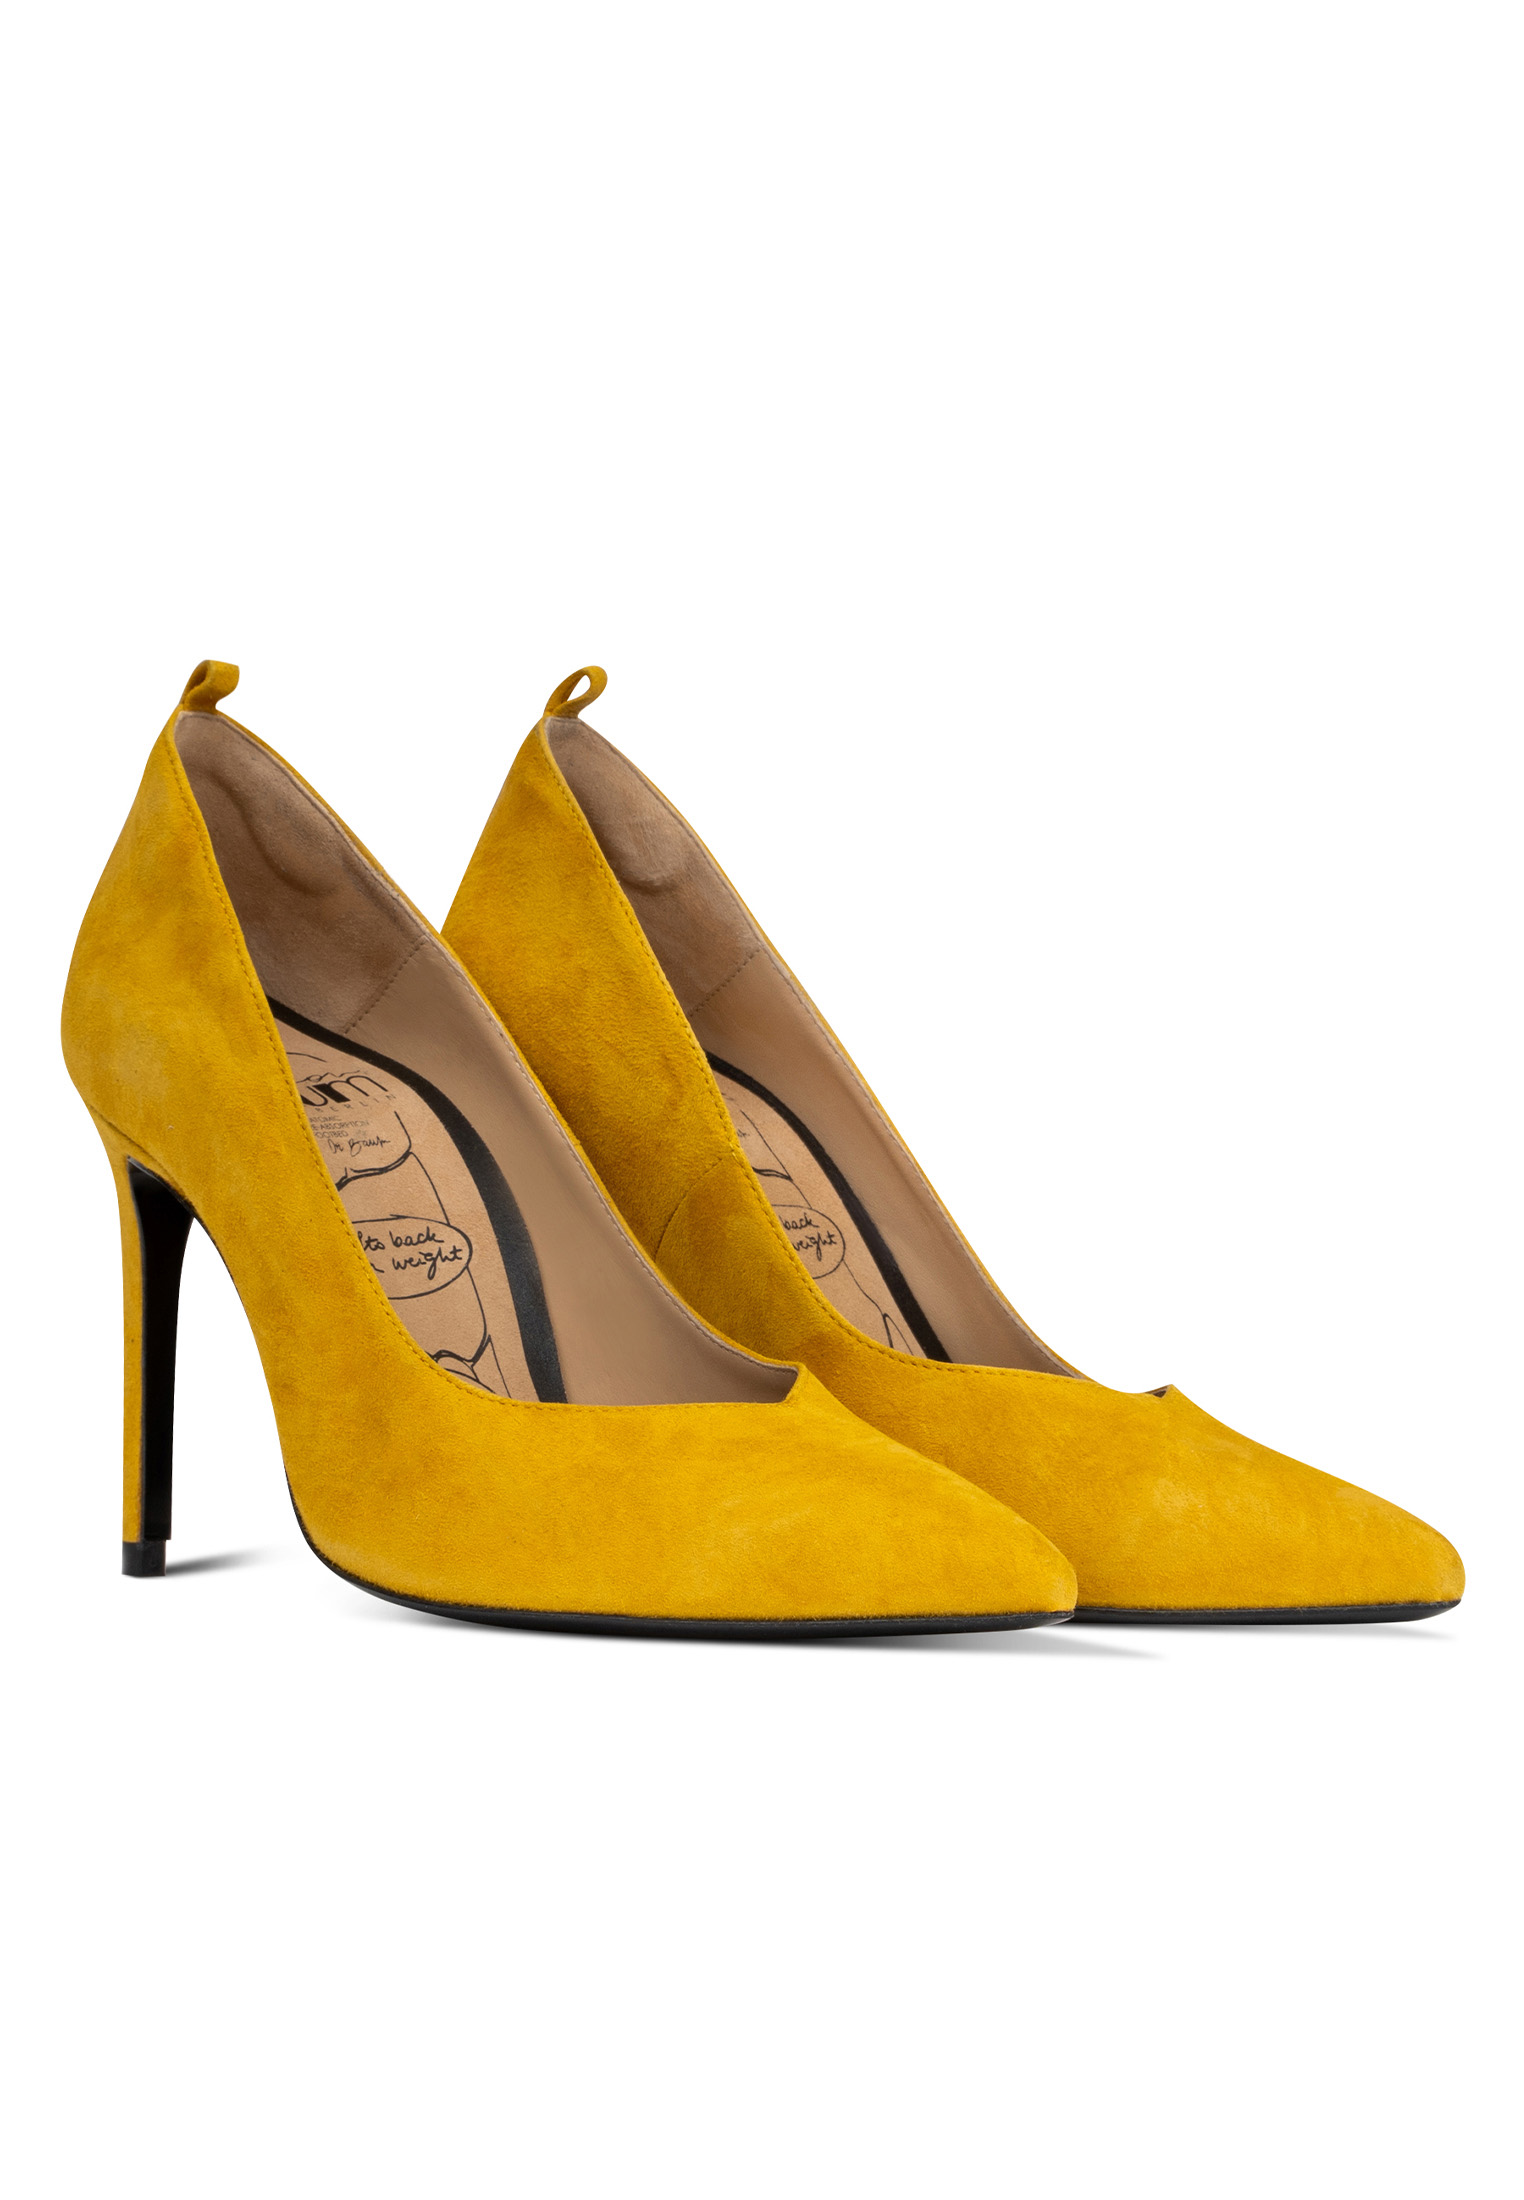 luksusowa para żółtych butów na obcasie pod kątem na białym tle z cieniem